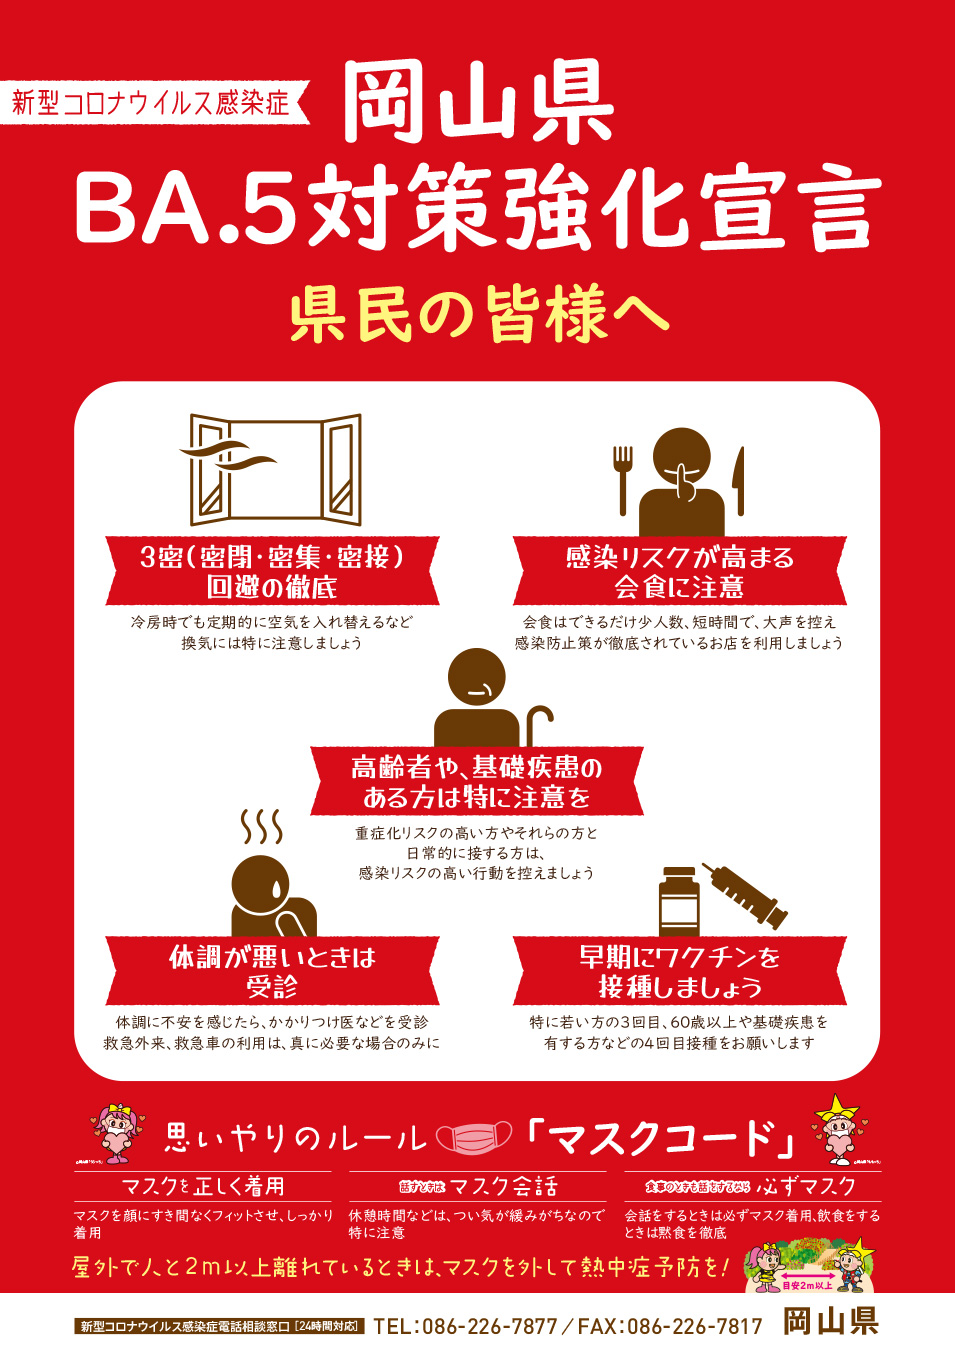 岡山県BA.5対策強化宣言